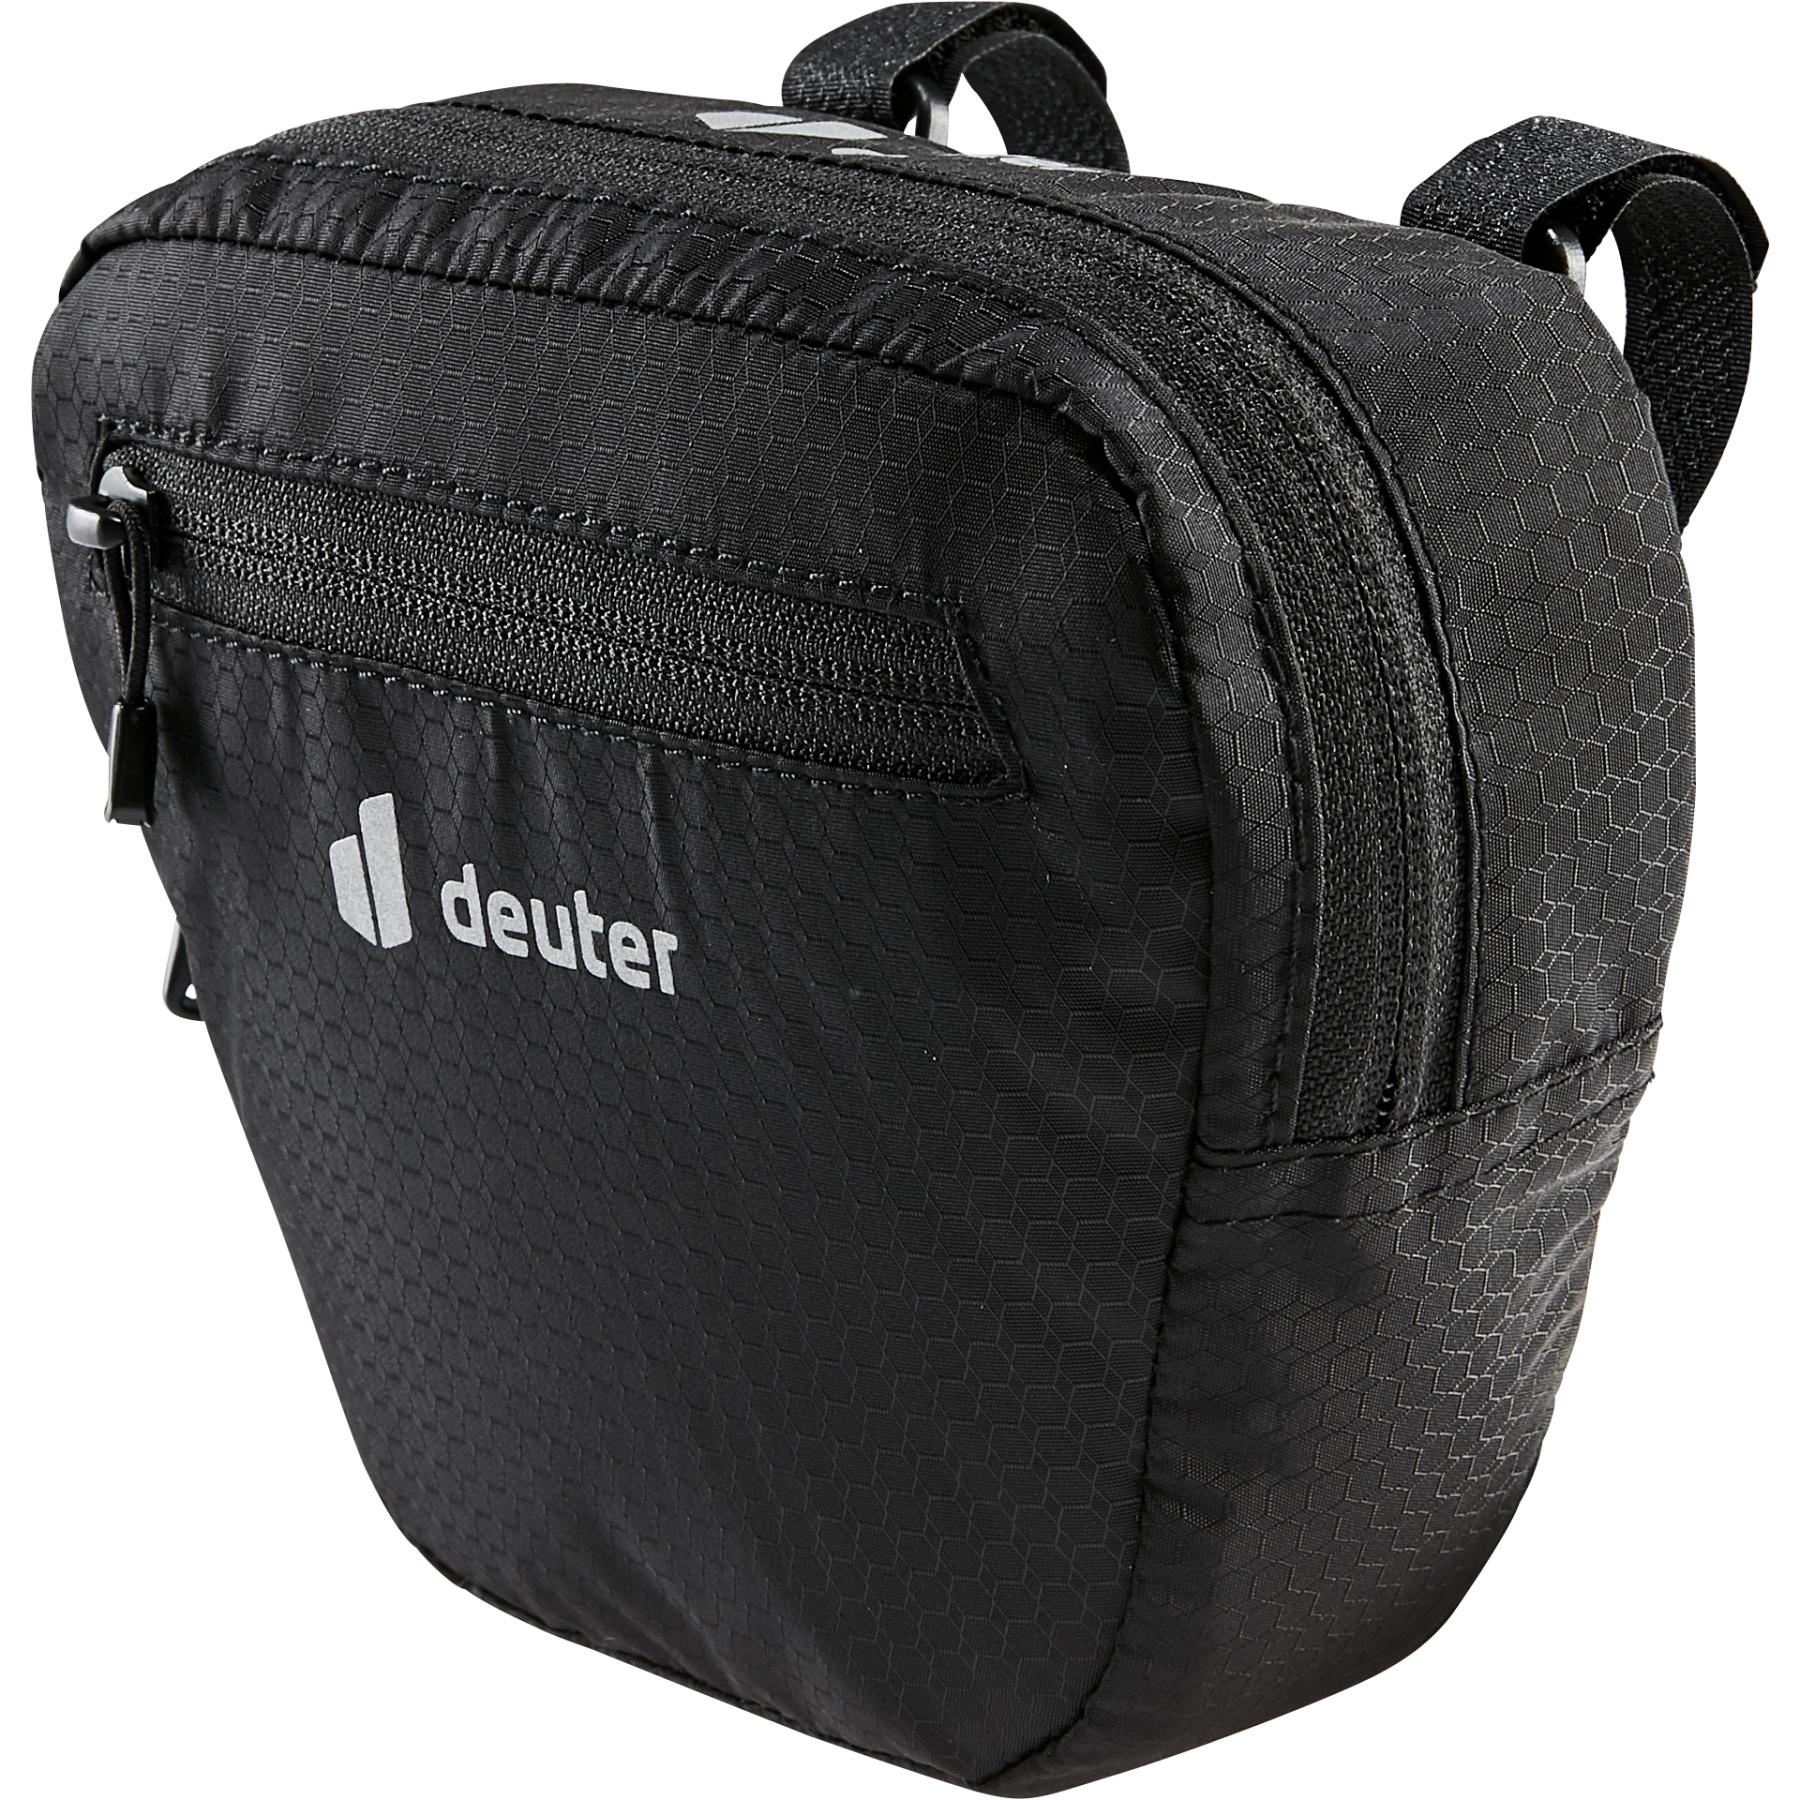 Productfoto van Deuter Front Bag 1.2 Handlebar Bag - black